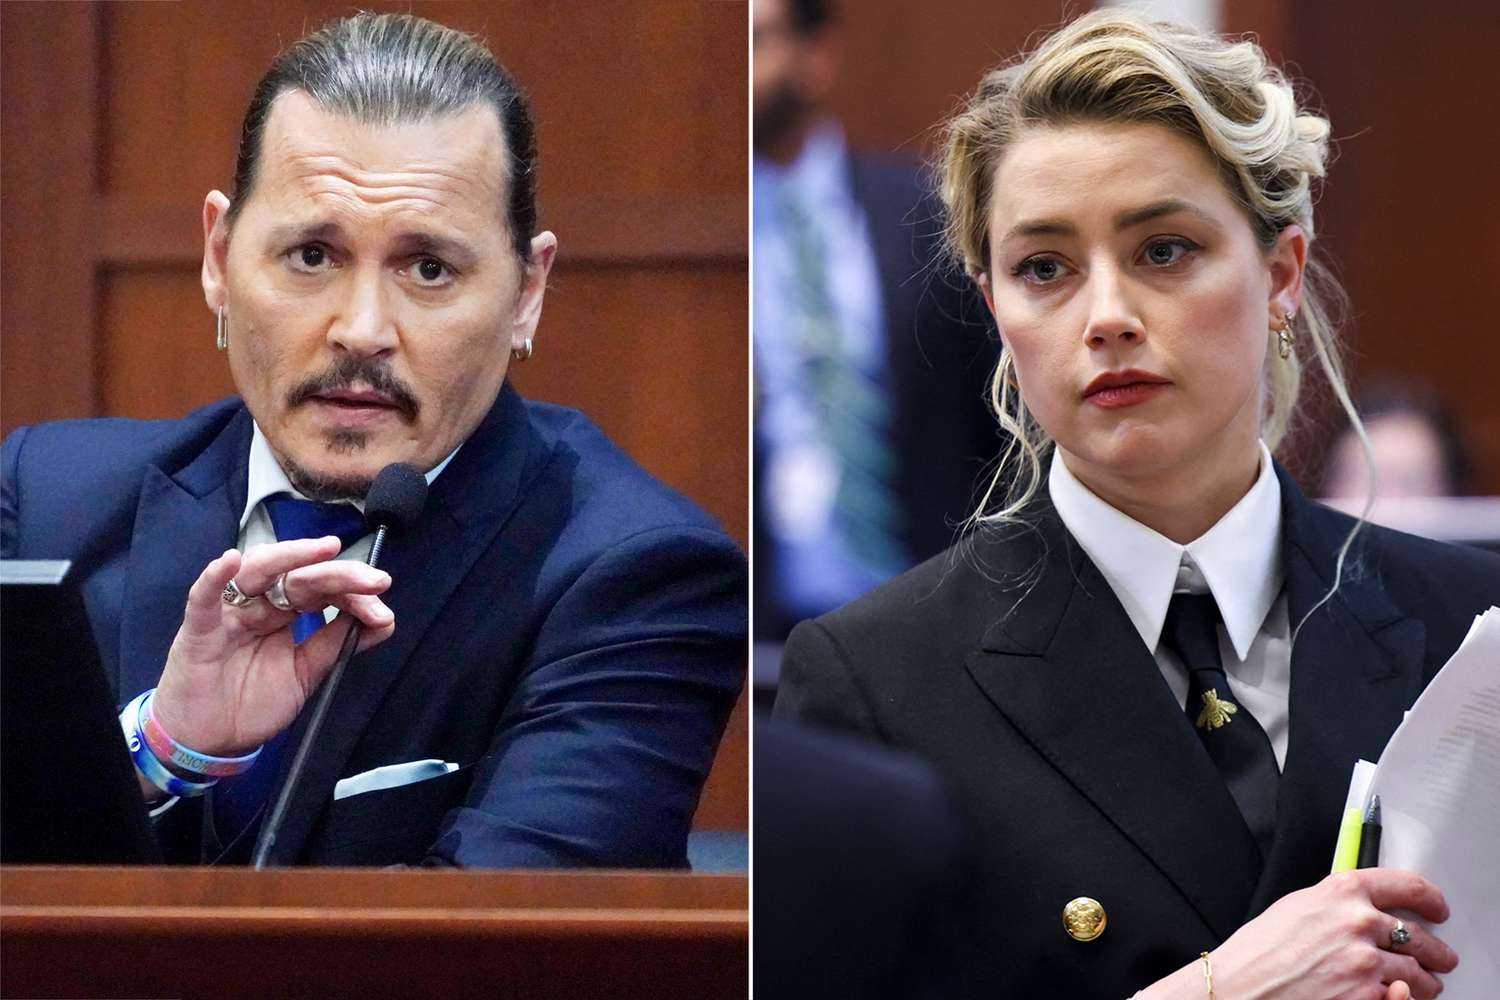 Inside the verdict Johnny Depp vs. Amber Heard a juror speaks out